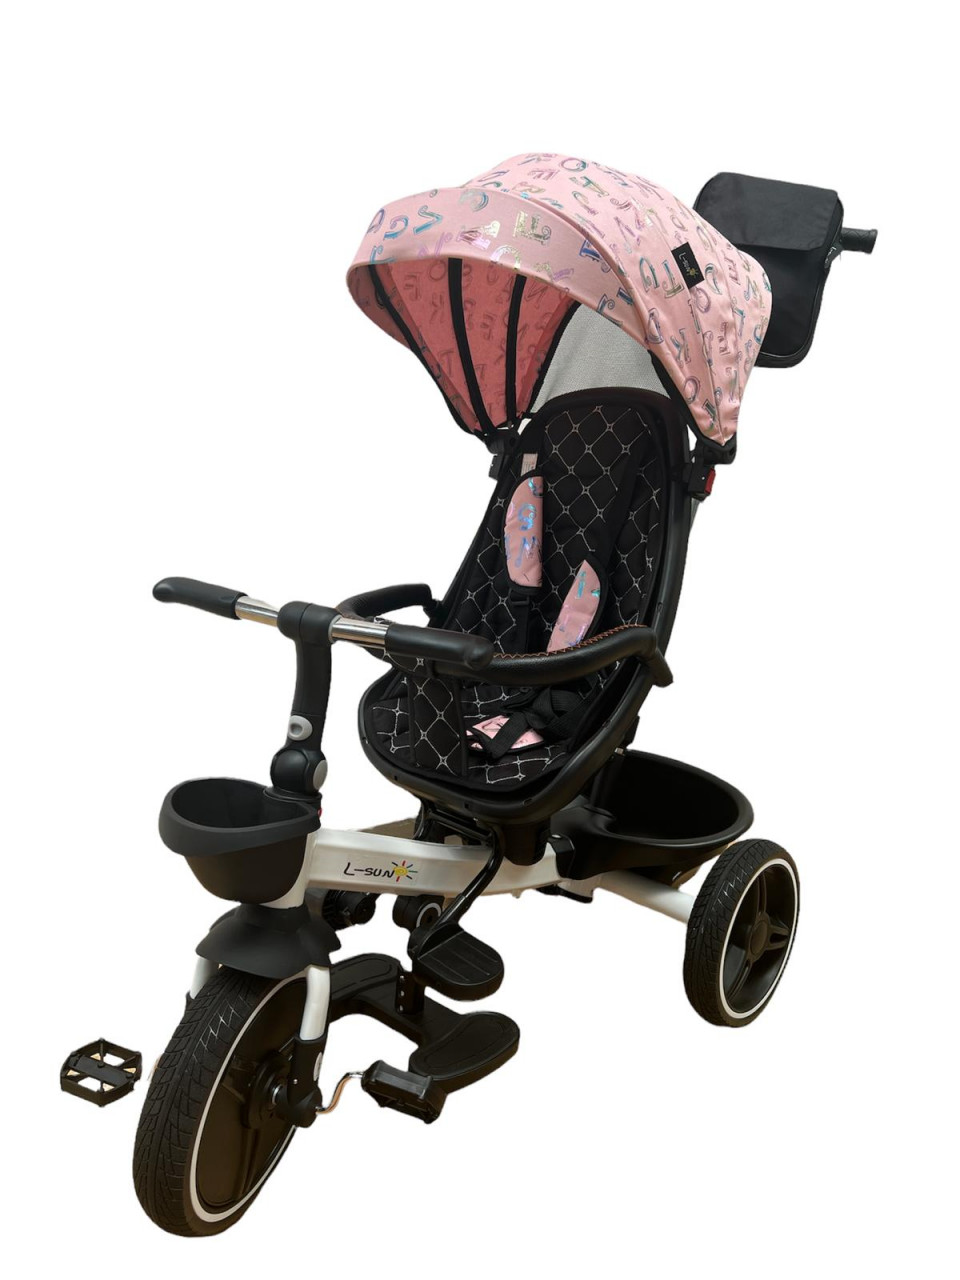 scaun auto bebe cu pozitie de somn Tricicleta pliabila cu scaun reversibil si pozitie de somn, Roz cu litere, TMR-44-roz